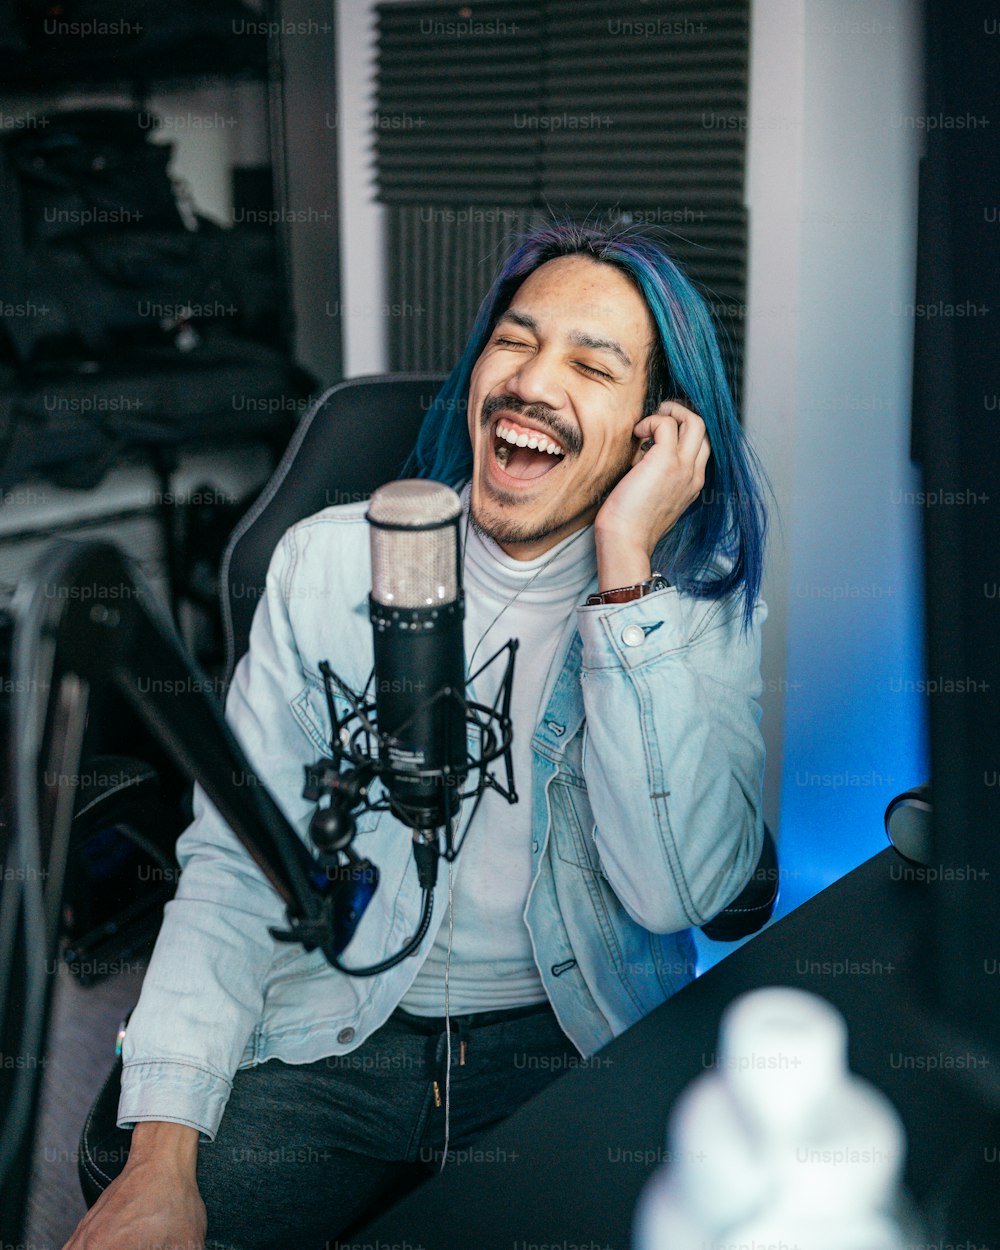 Ein Mann mit blauen Haaren sitzt vor einem Mikrofon